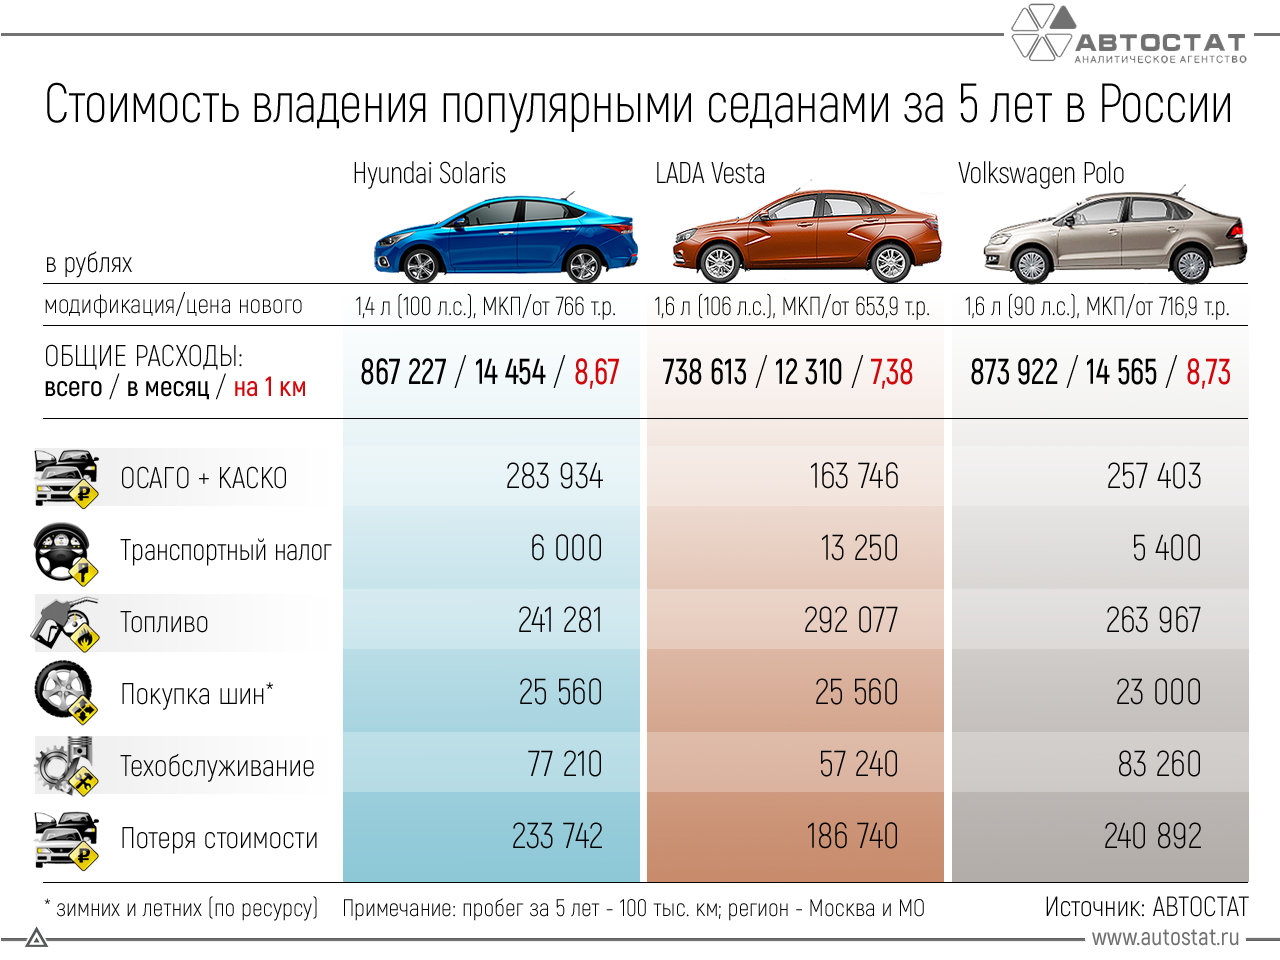 Авто сколько. Сравнение стоимости обслуживания автомобилей. Сравнение стоимости владения автомобилем. Самый дешевый в обслуживании автомобиль. Себестоимость машины.